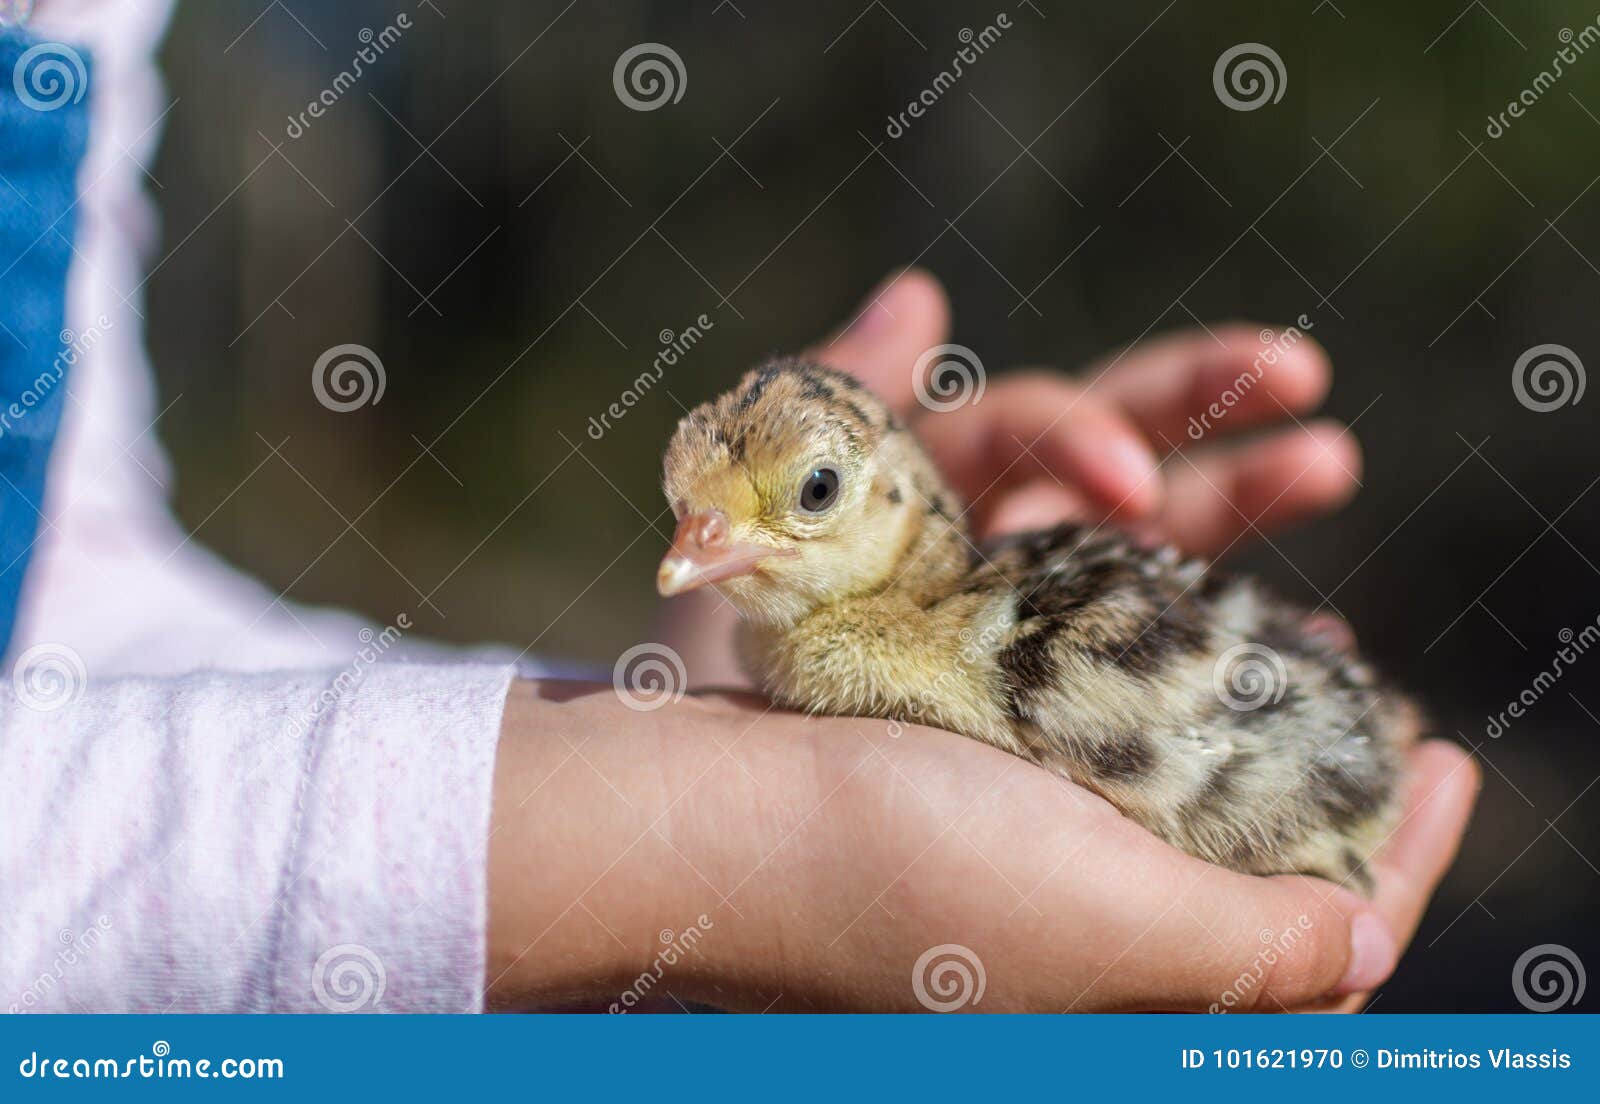 第一次见到把鸡当宠物的小孩|宠物|母鸡|小孩_新浪新闻